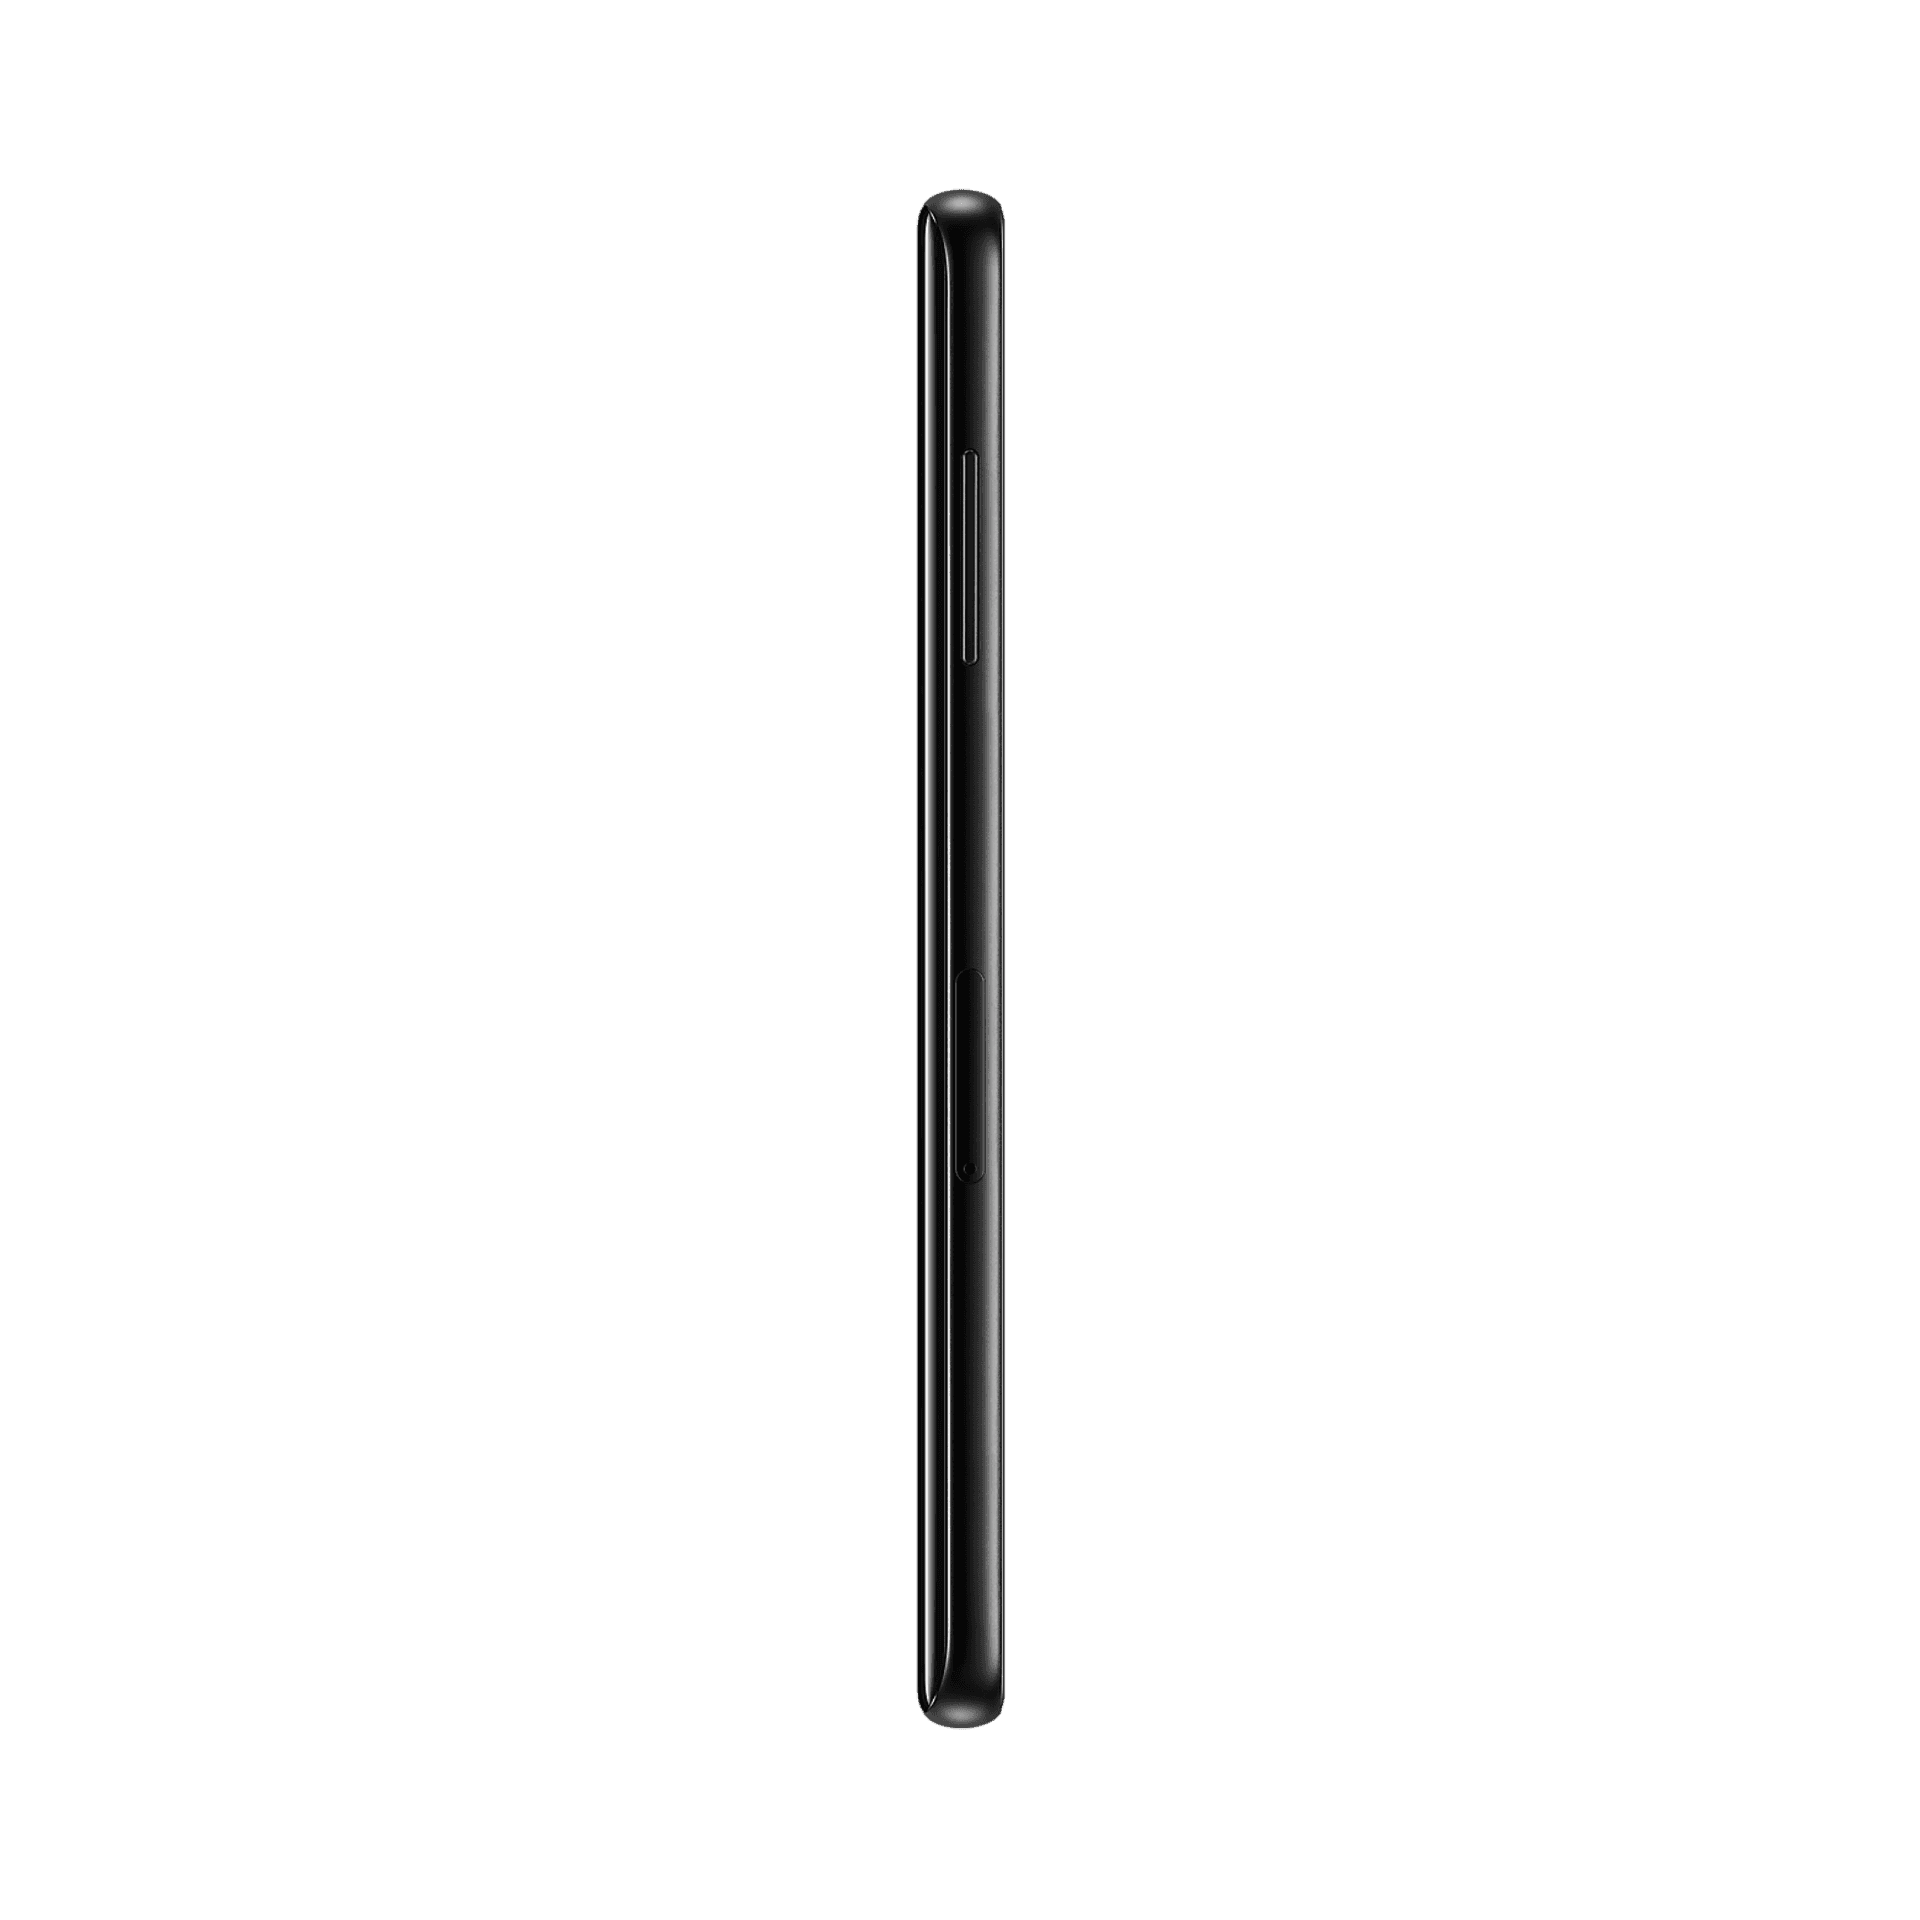 Samsung Galaxy A8 Plus - 64 GB - Siyah